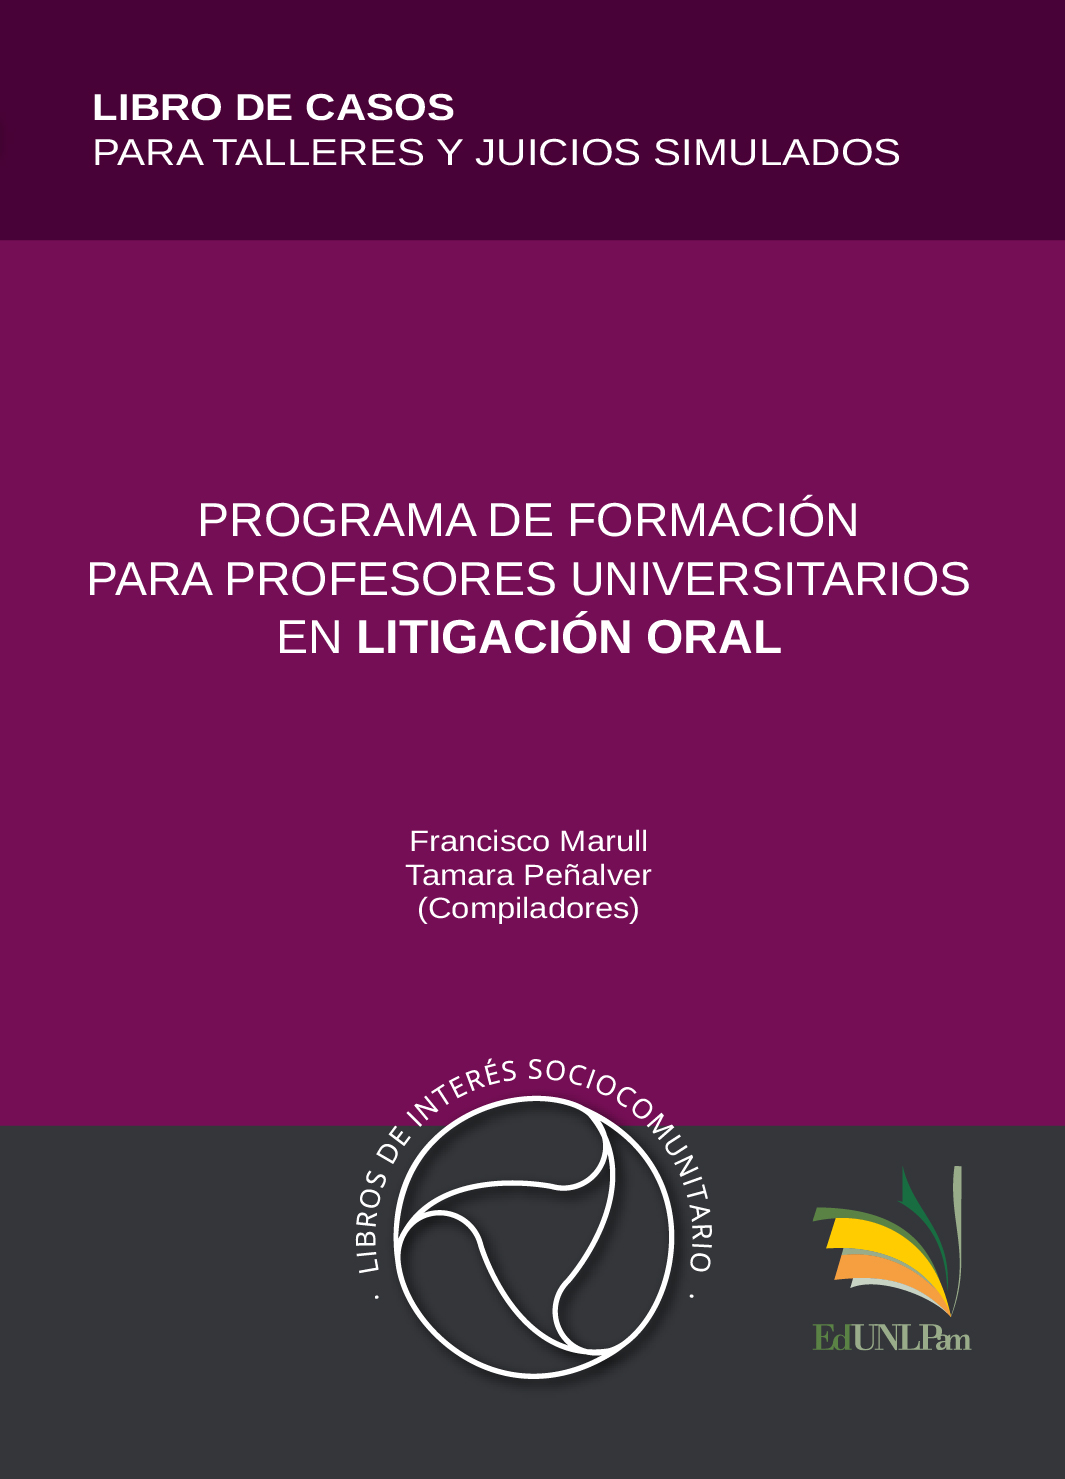 Programa de formación para profesores universitarios en litigación oral - Libro de casos para talleres y juicios simulados